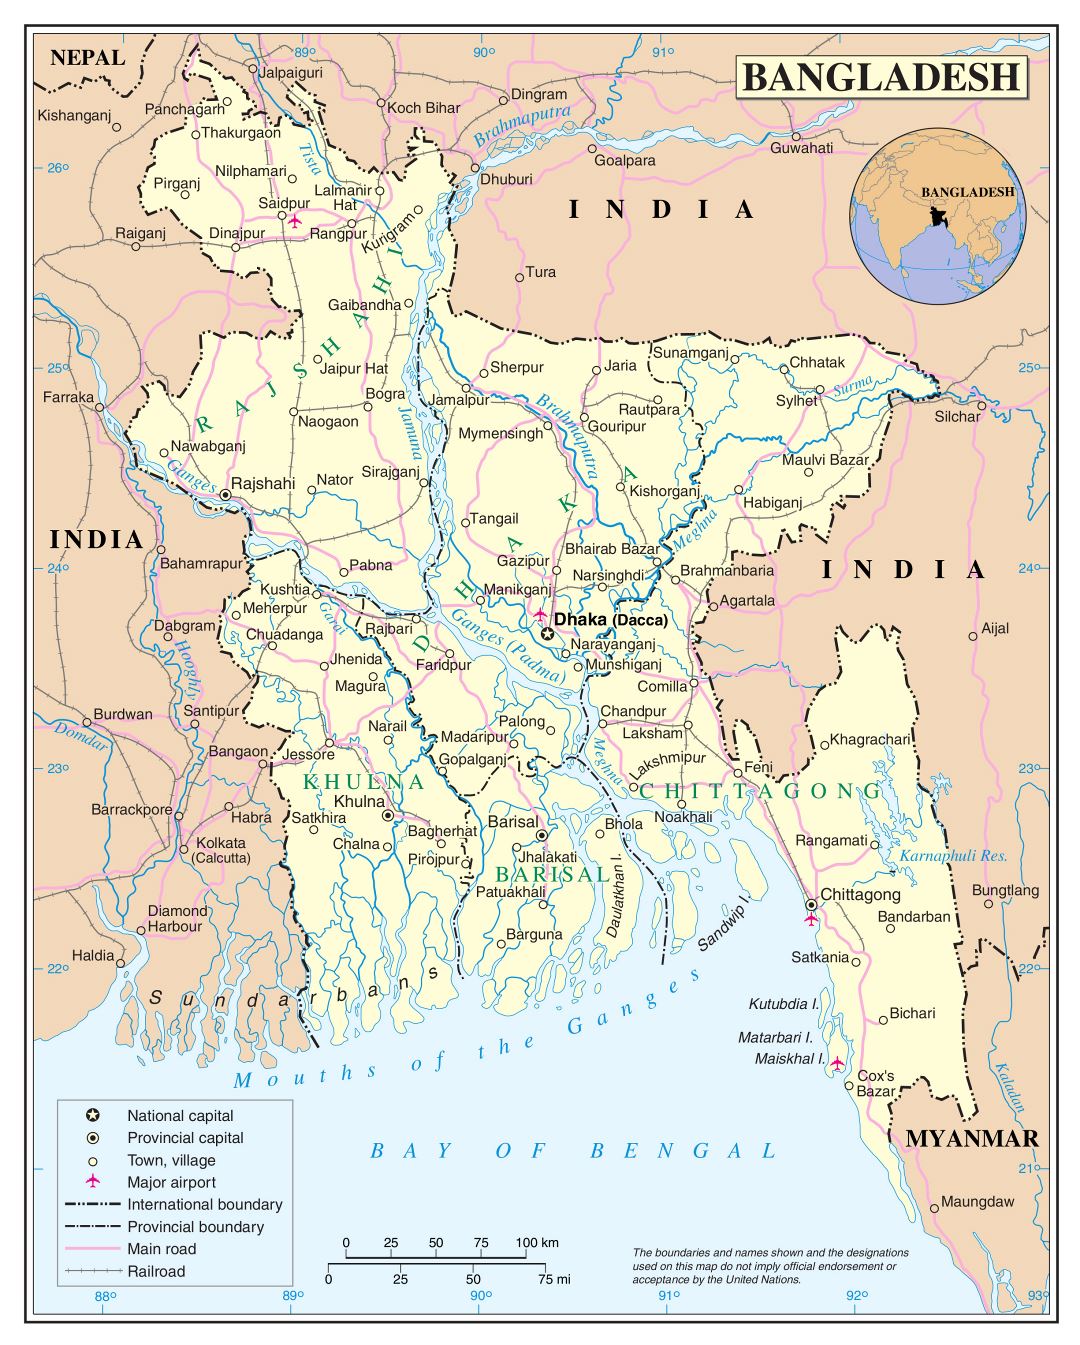 Большая детальная политическая и административная карта Бангладеш с дорогами, железными дорогами, городами и аэропортами